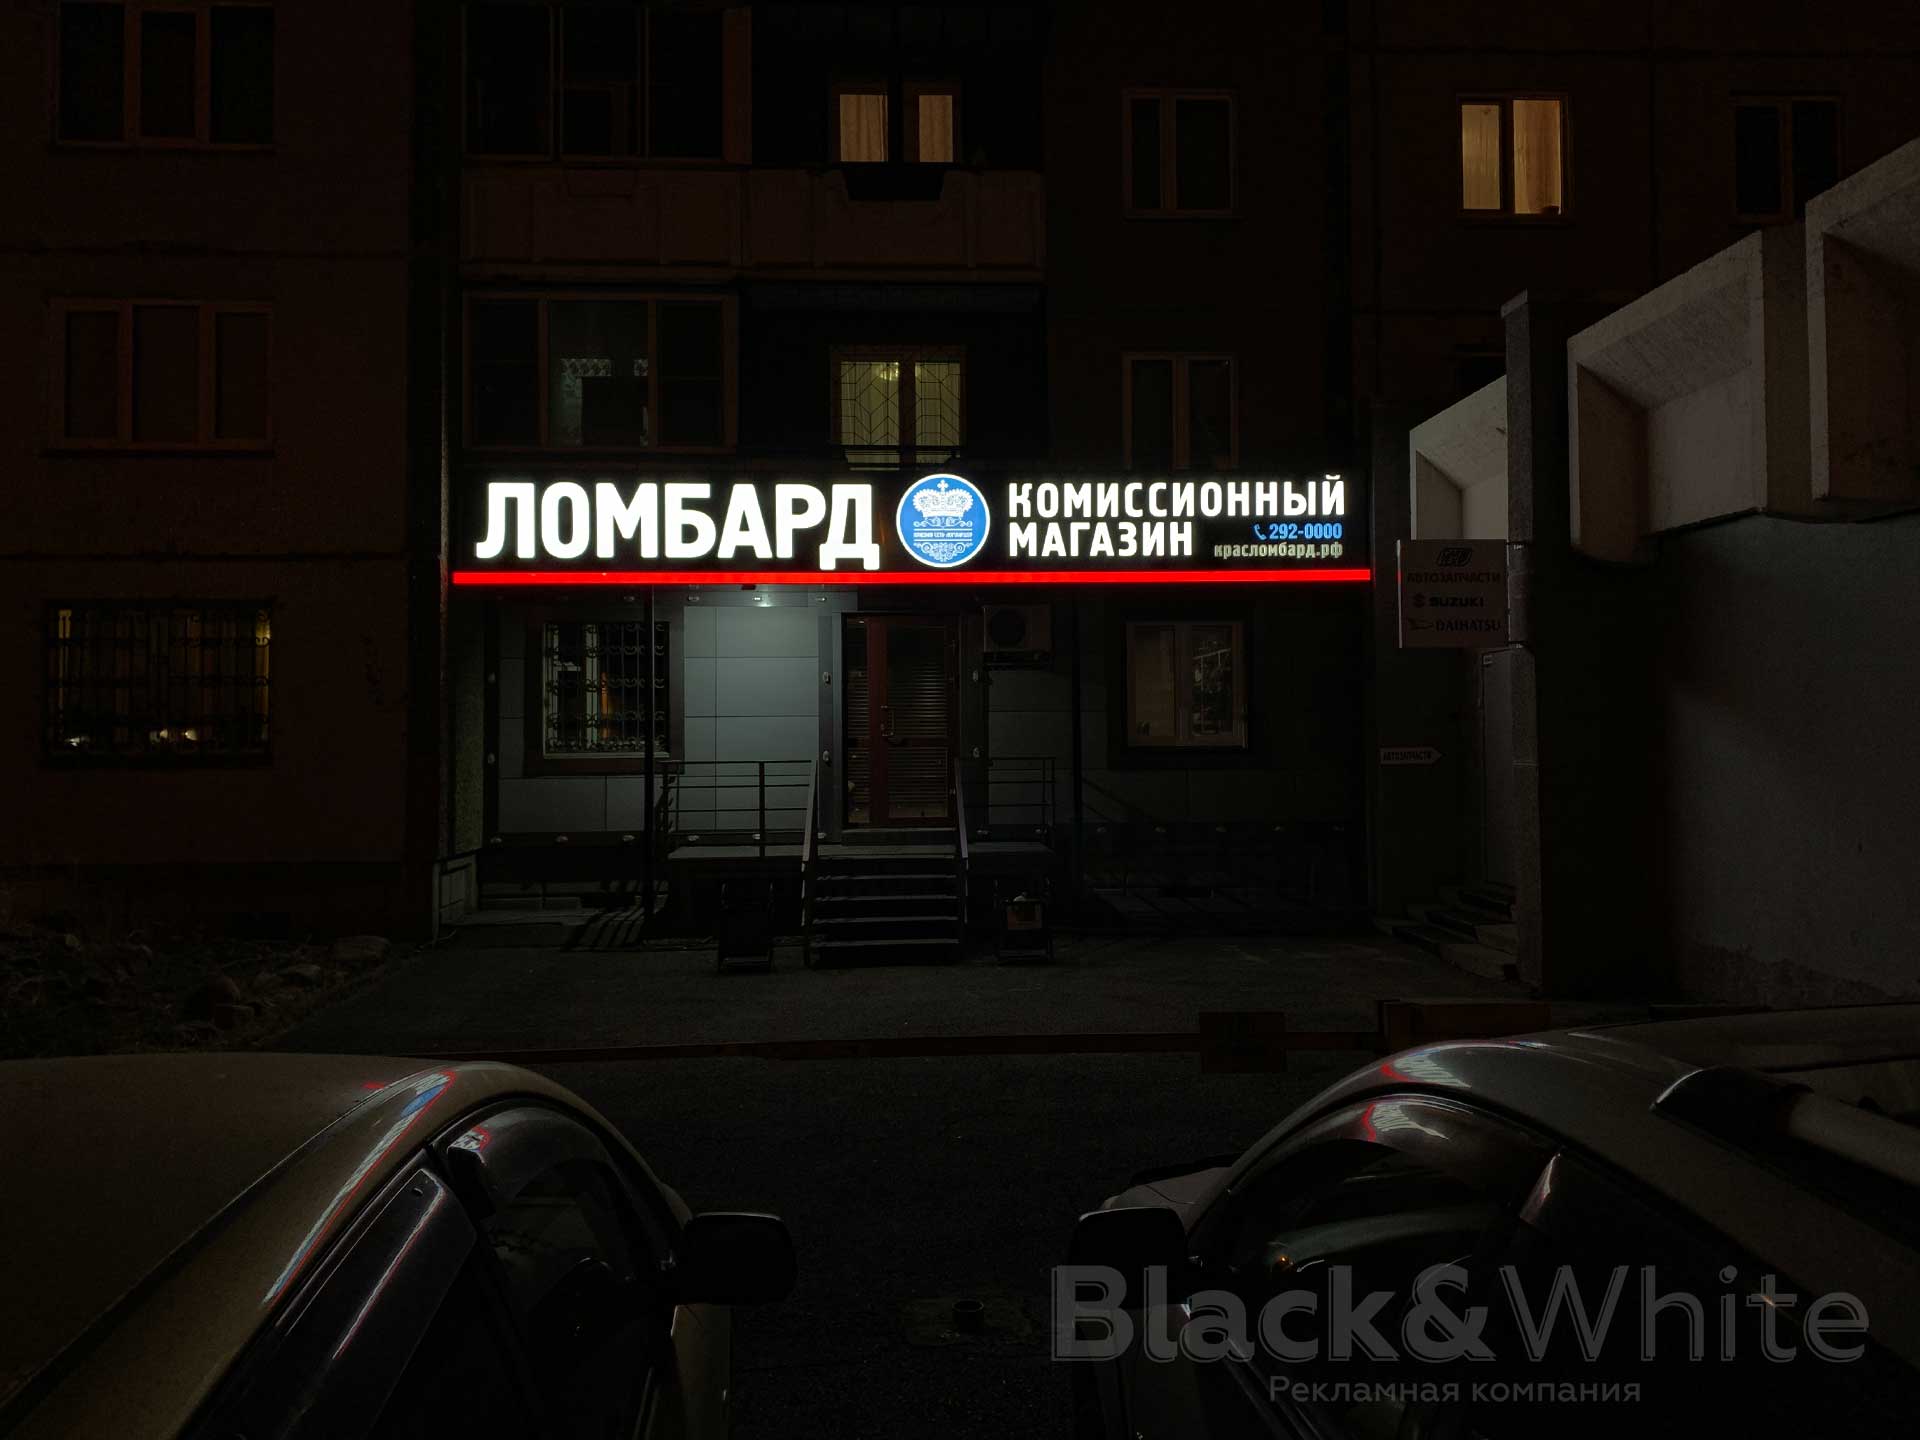 Световая-вывеска-для-ломбарда-с-световыми-объёмными-буквами-в-Красноярске.jpg